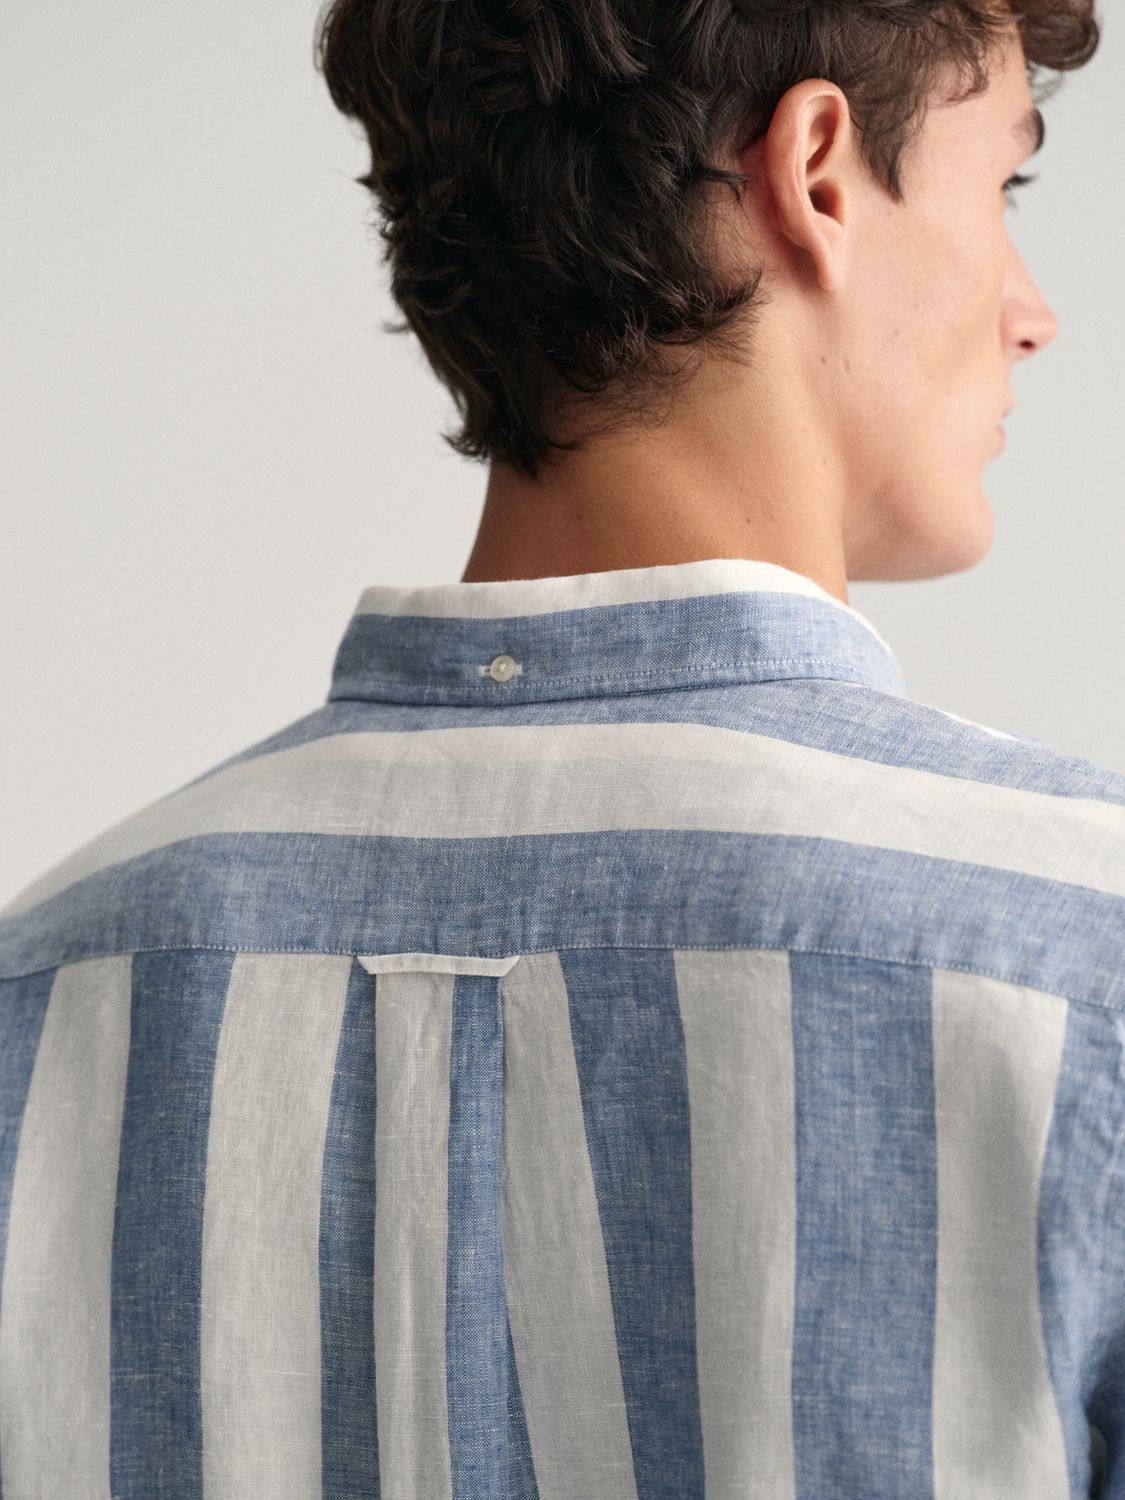 GANT Striped Linen Long Sleeve Shirt, Blue/White, S